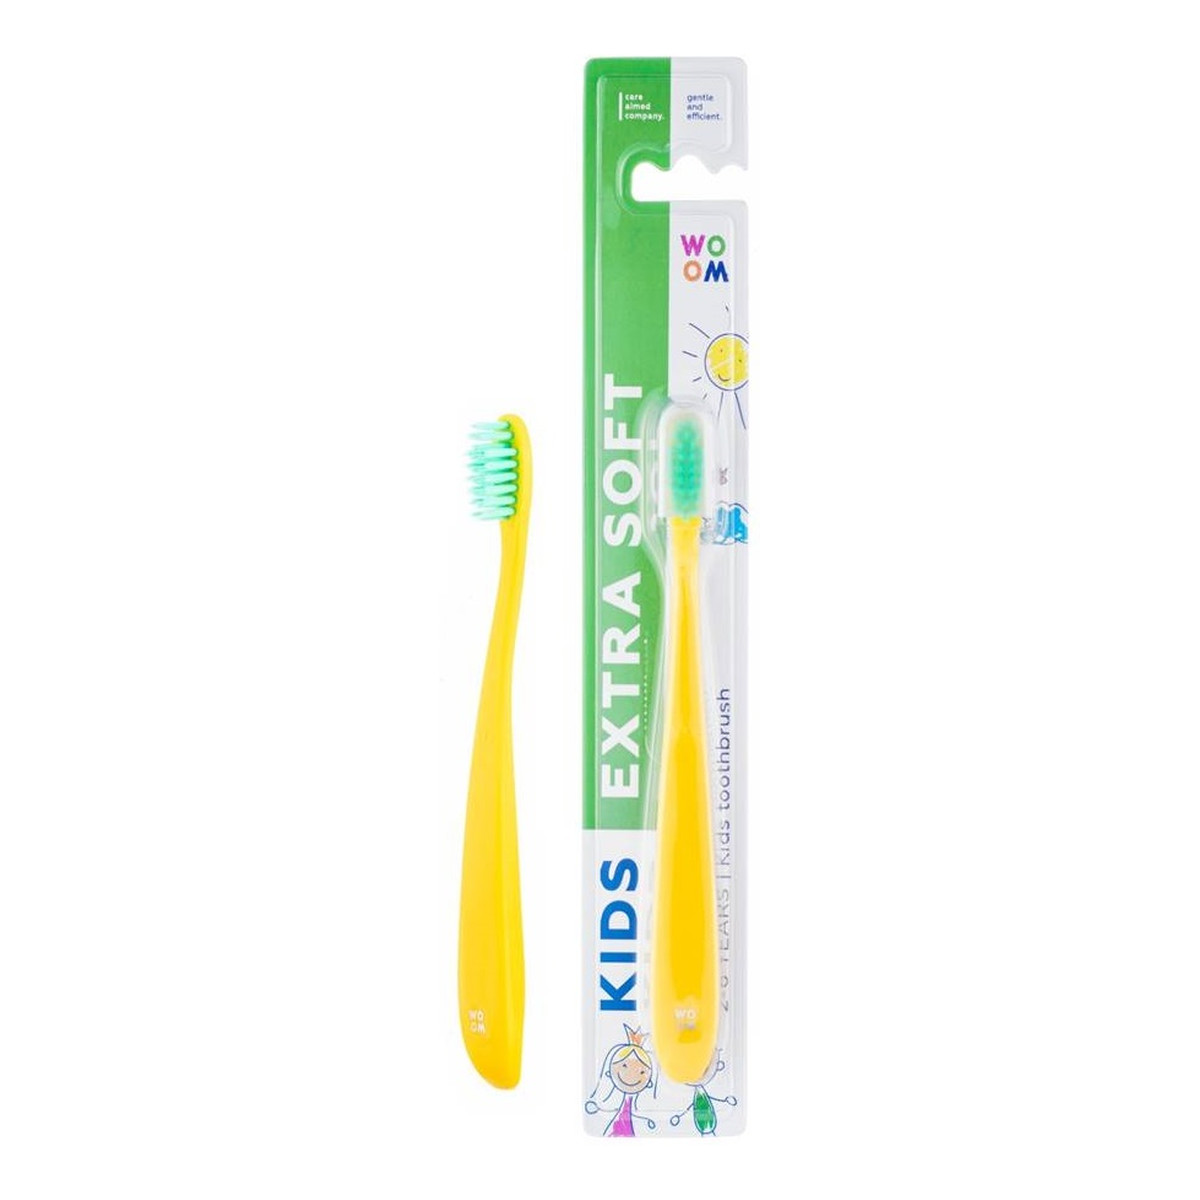 Woom Kids extra soft toothbrush bardzo delikatna szczoteczka do zębów dla dzieci 2-6 years